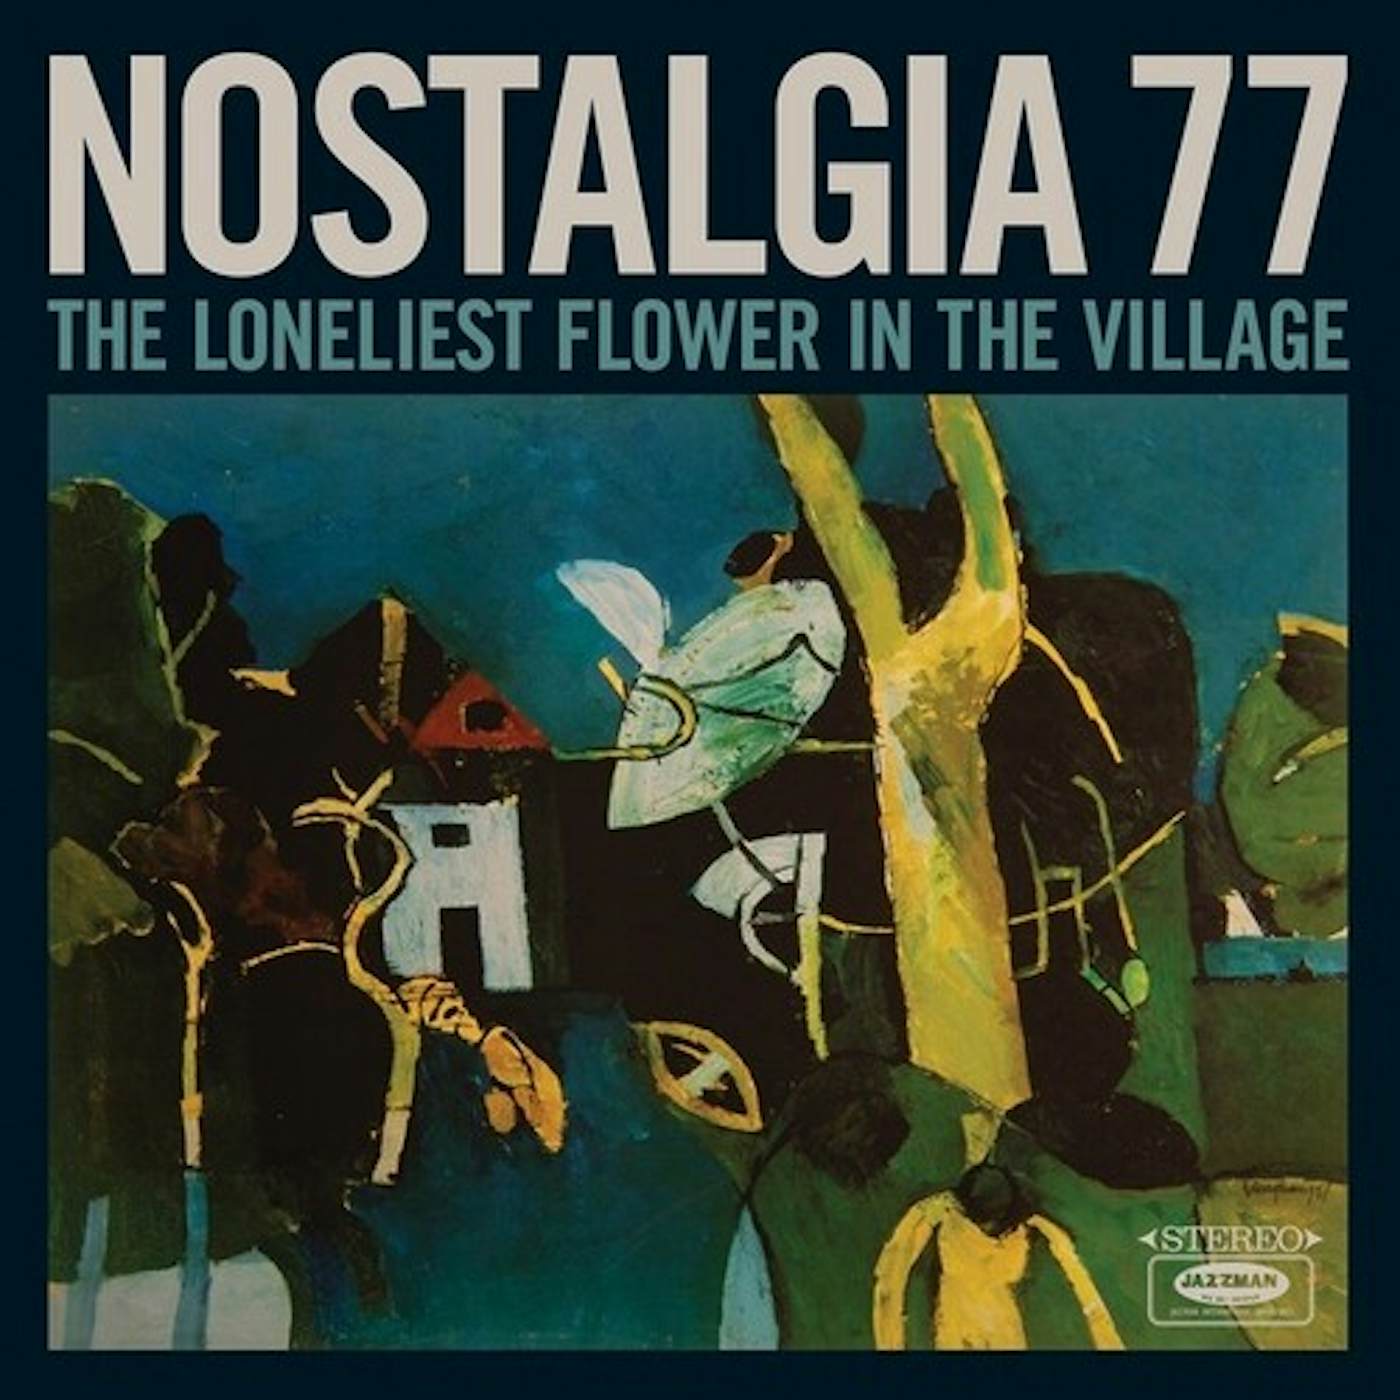 Nostalgia 77 LONELIEST FLOWER IN THE VILLAGE Vinyl Record